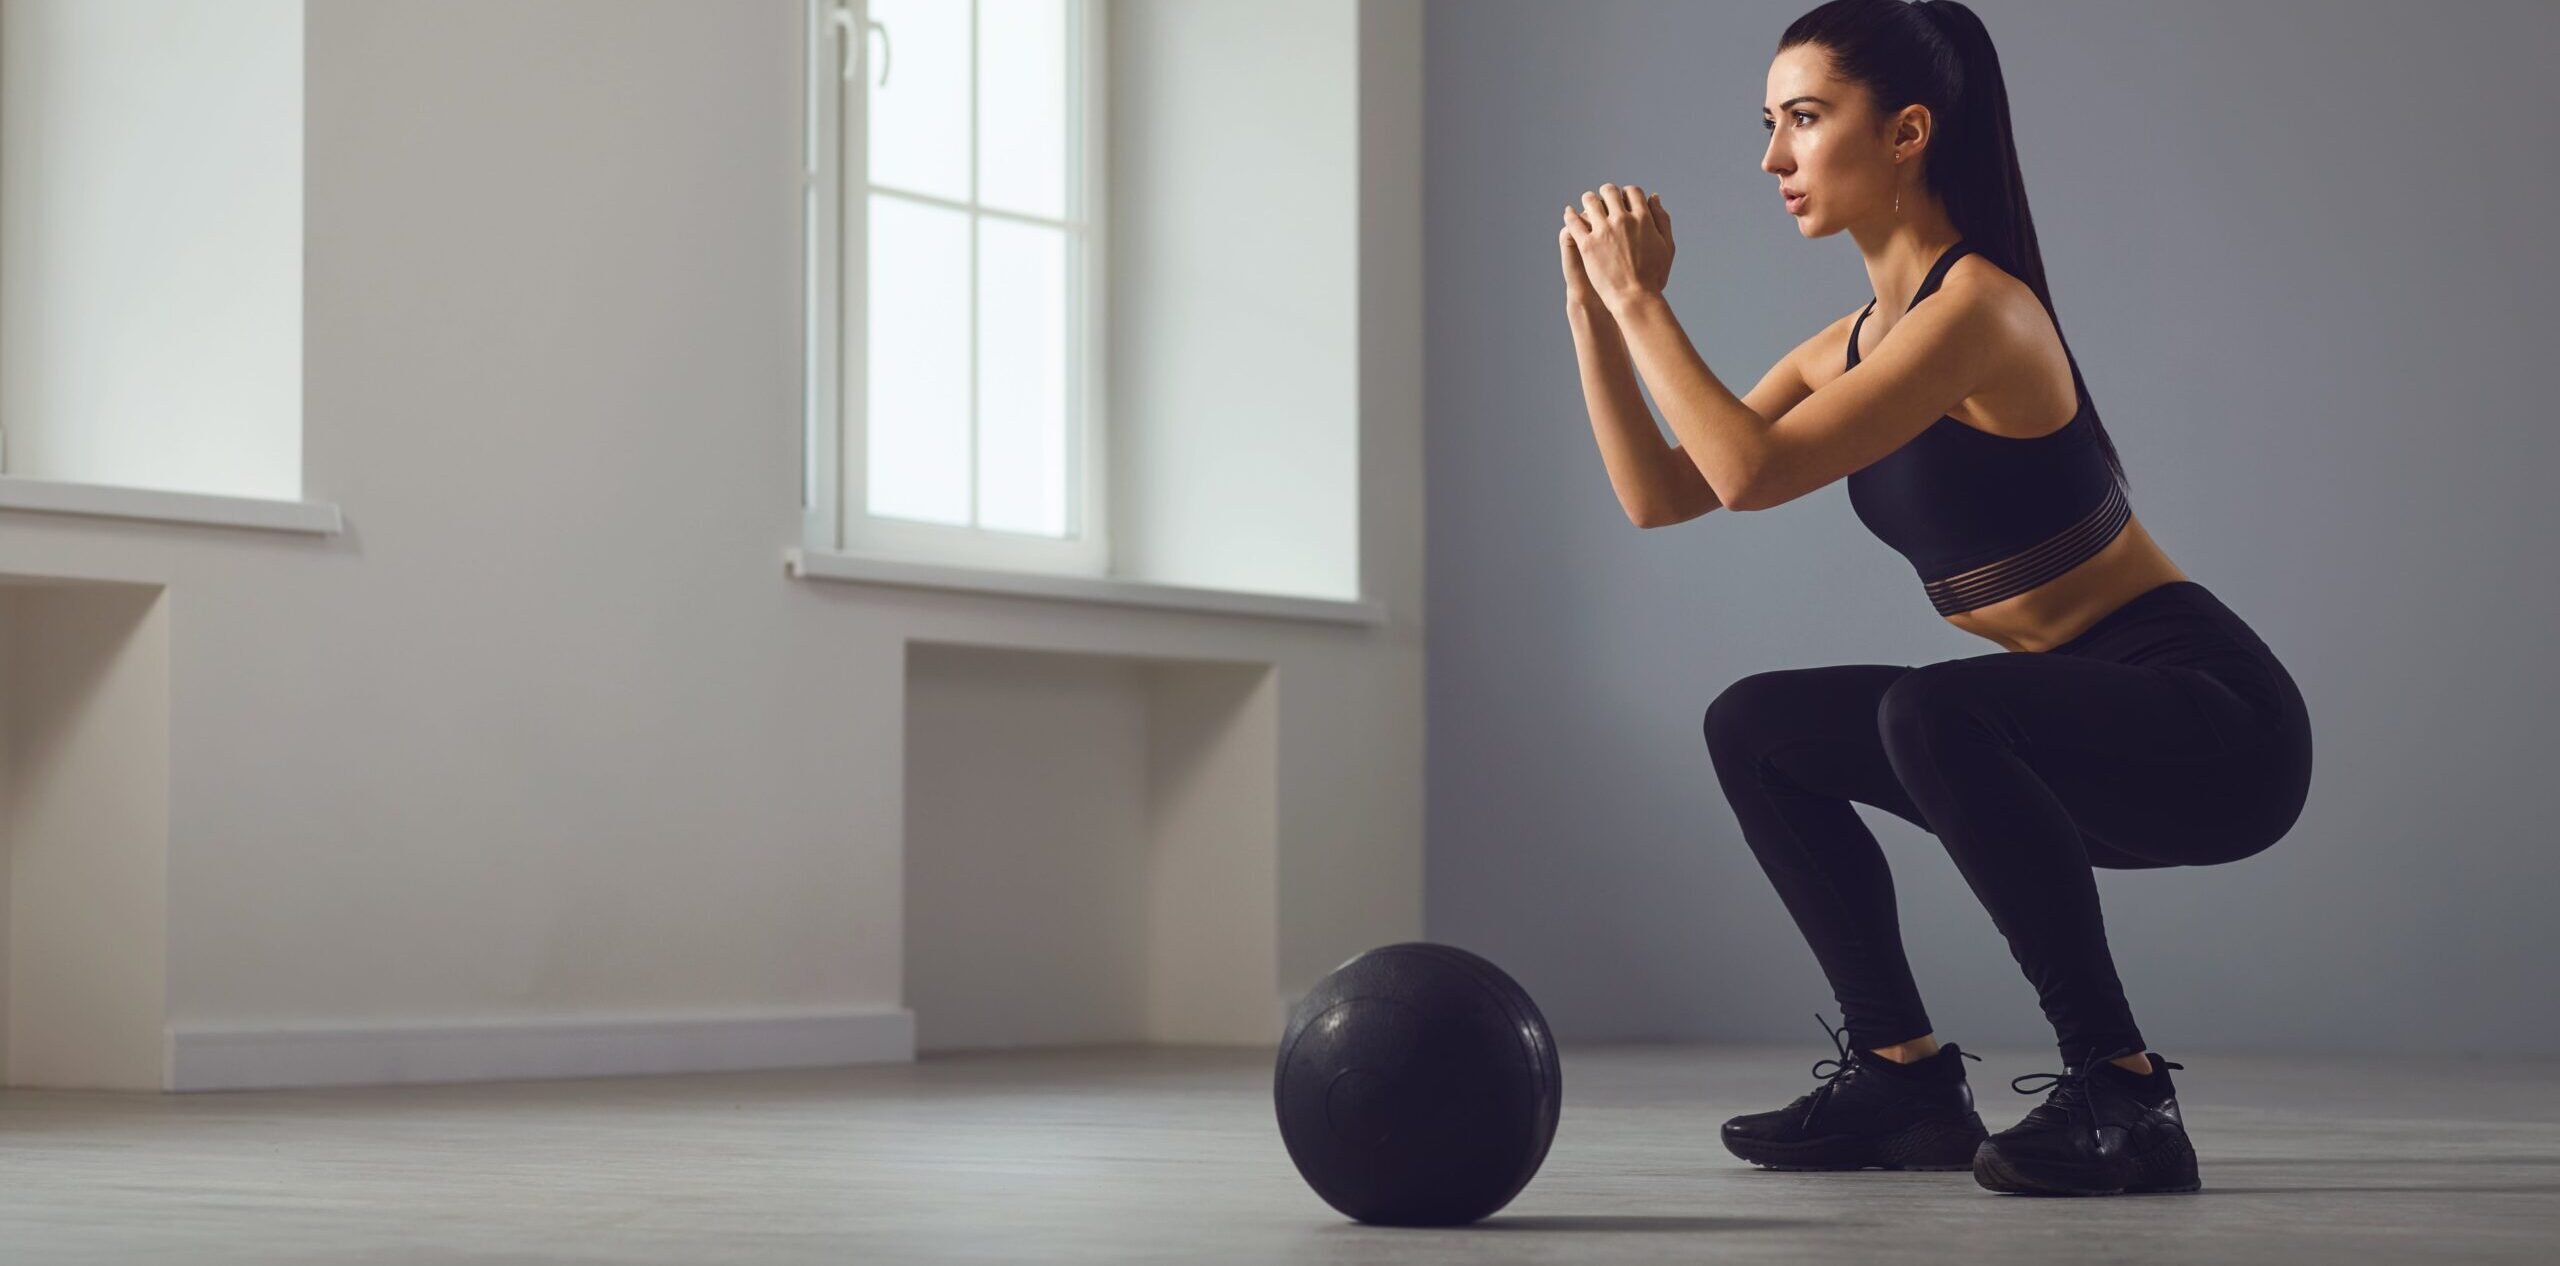 Exercícios para ganhar massa muscular: 9 opções para fazer em casa